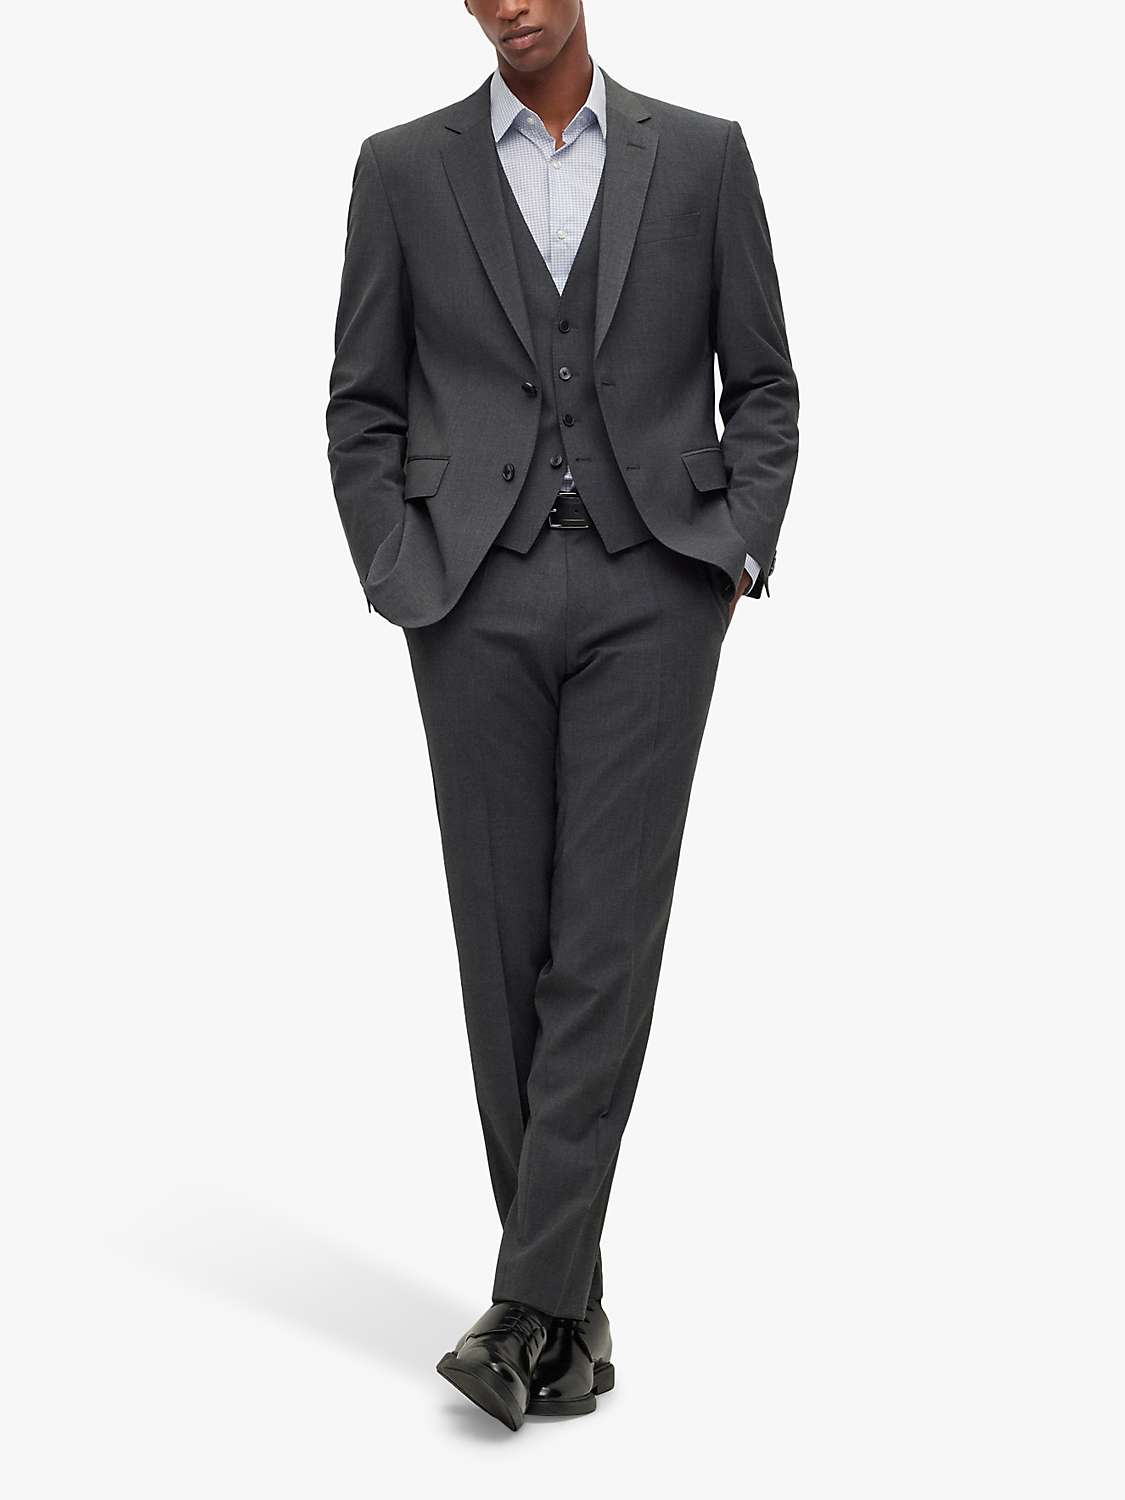 Buy BOSS Genius Virgin Wool Slim Fit Suit Trousers Online at johnlewis.com